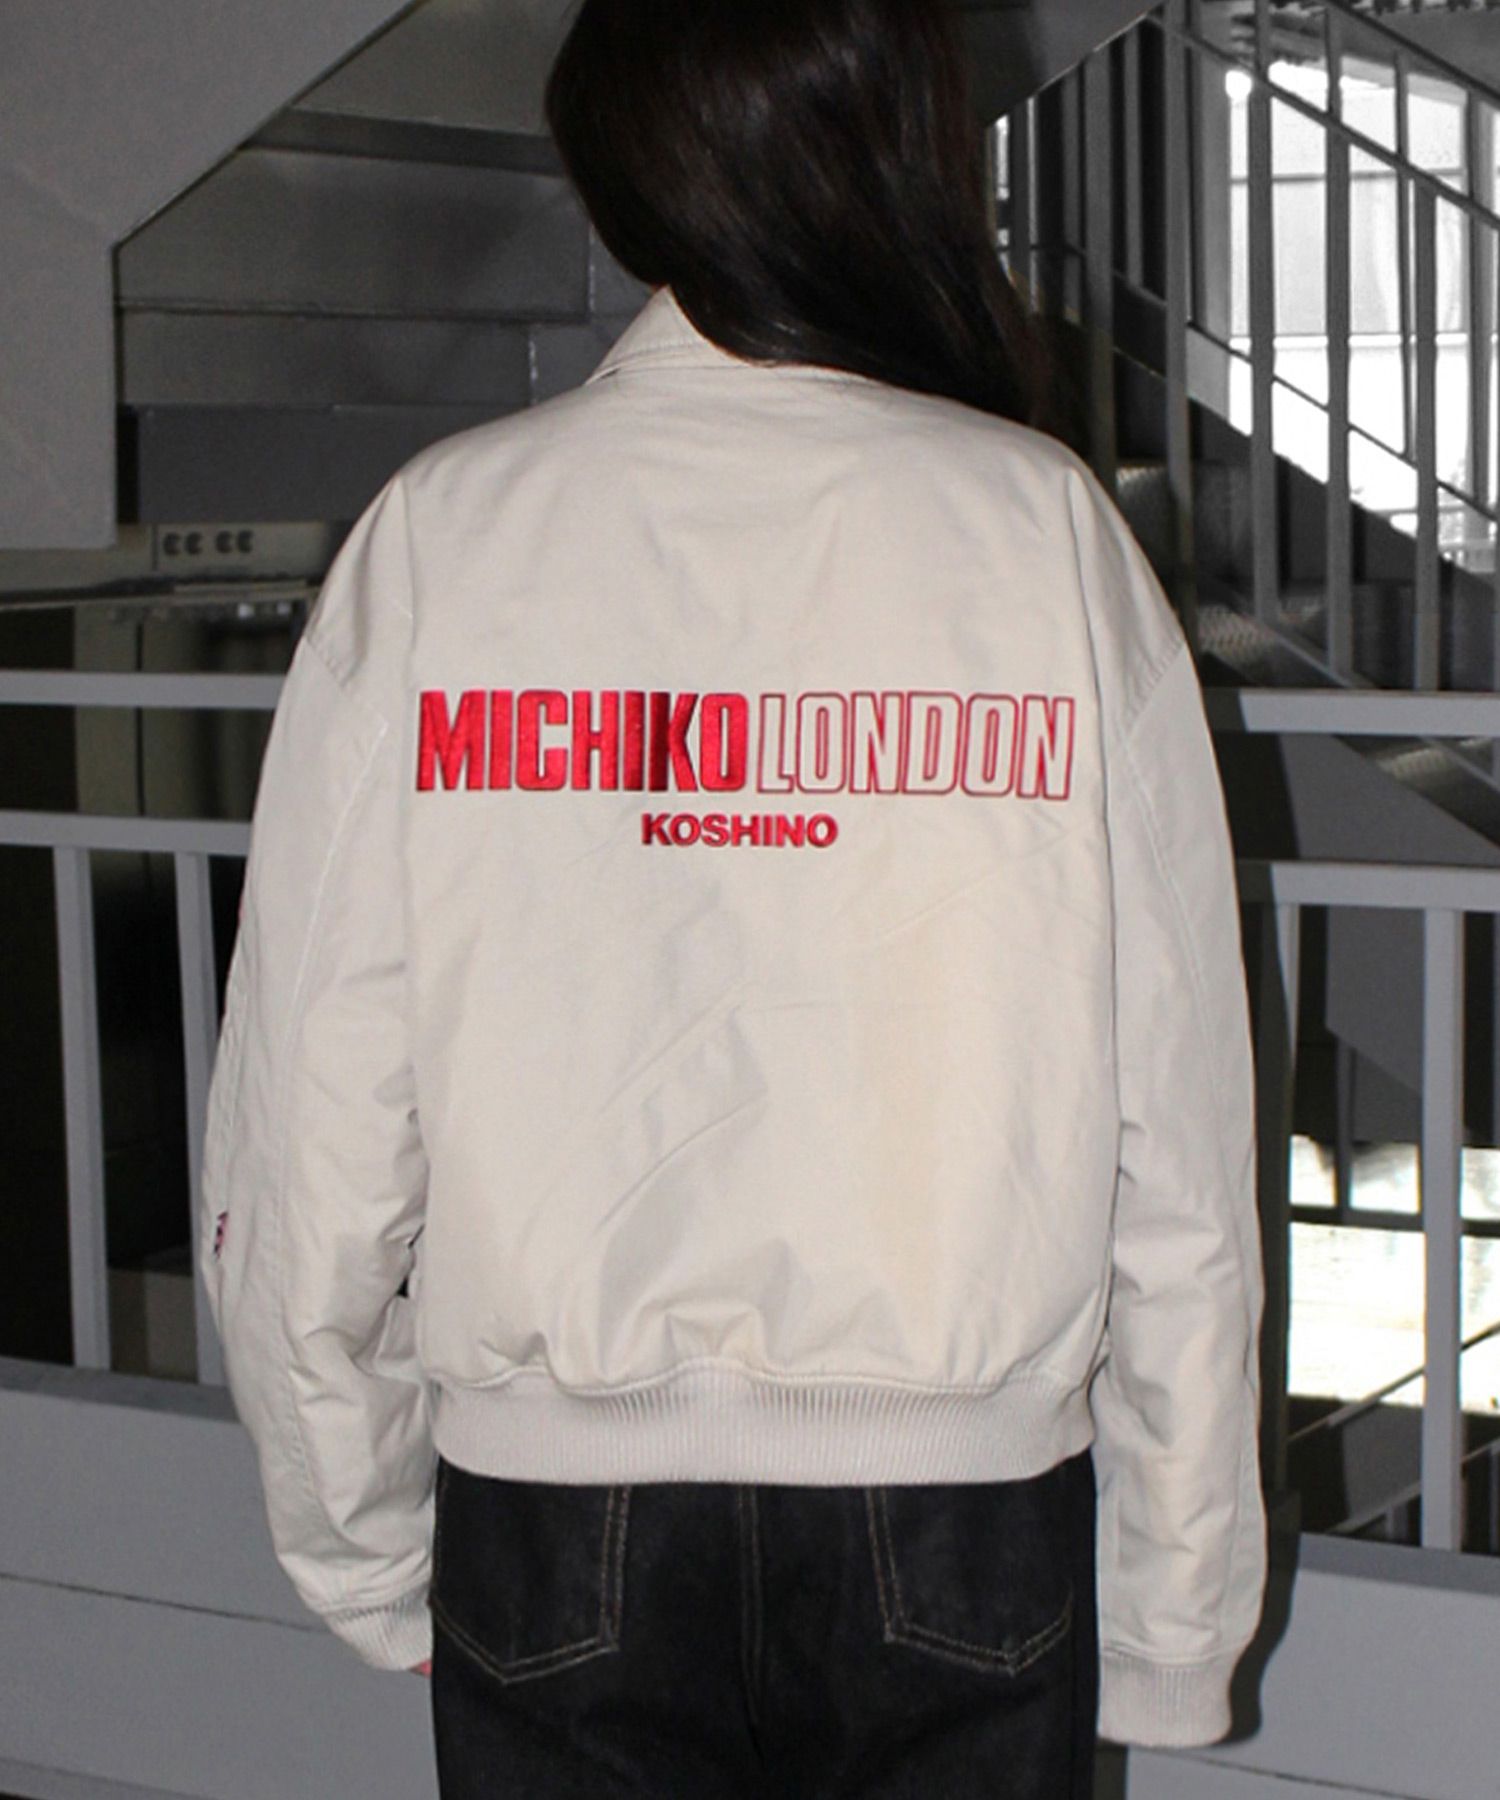 미치코런던(MICHIKO LONDON) | 무신사 추천 브랜드